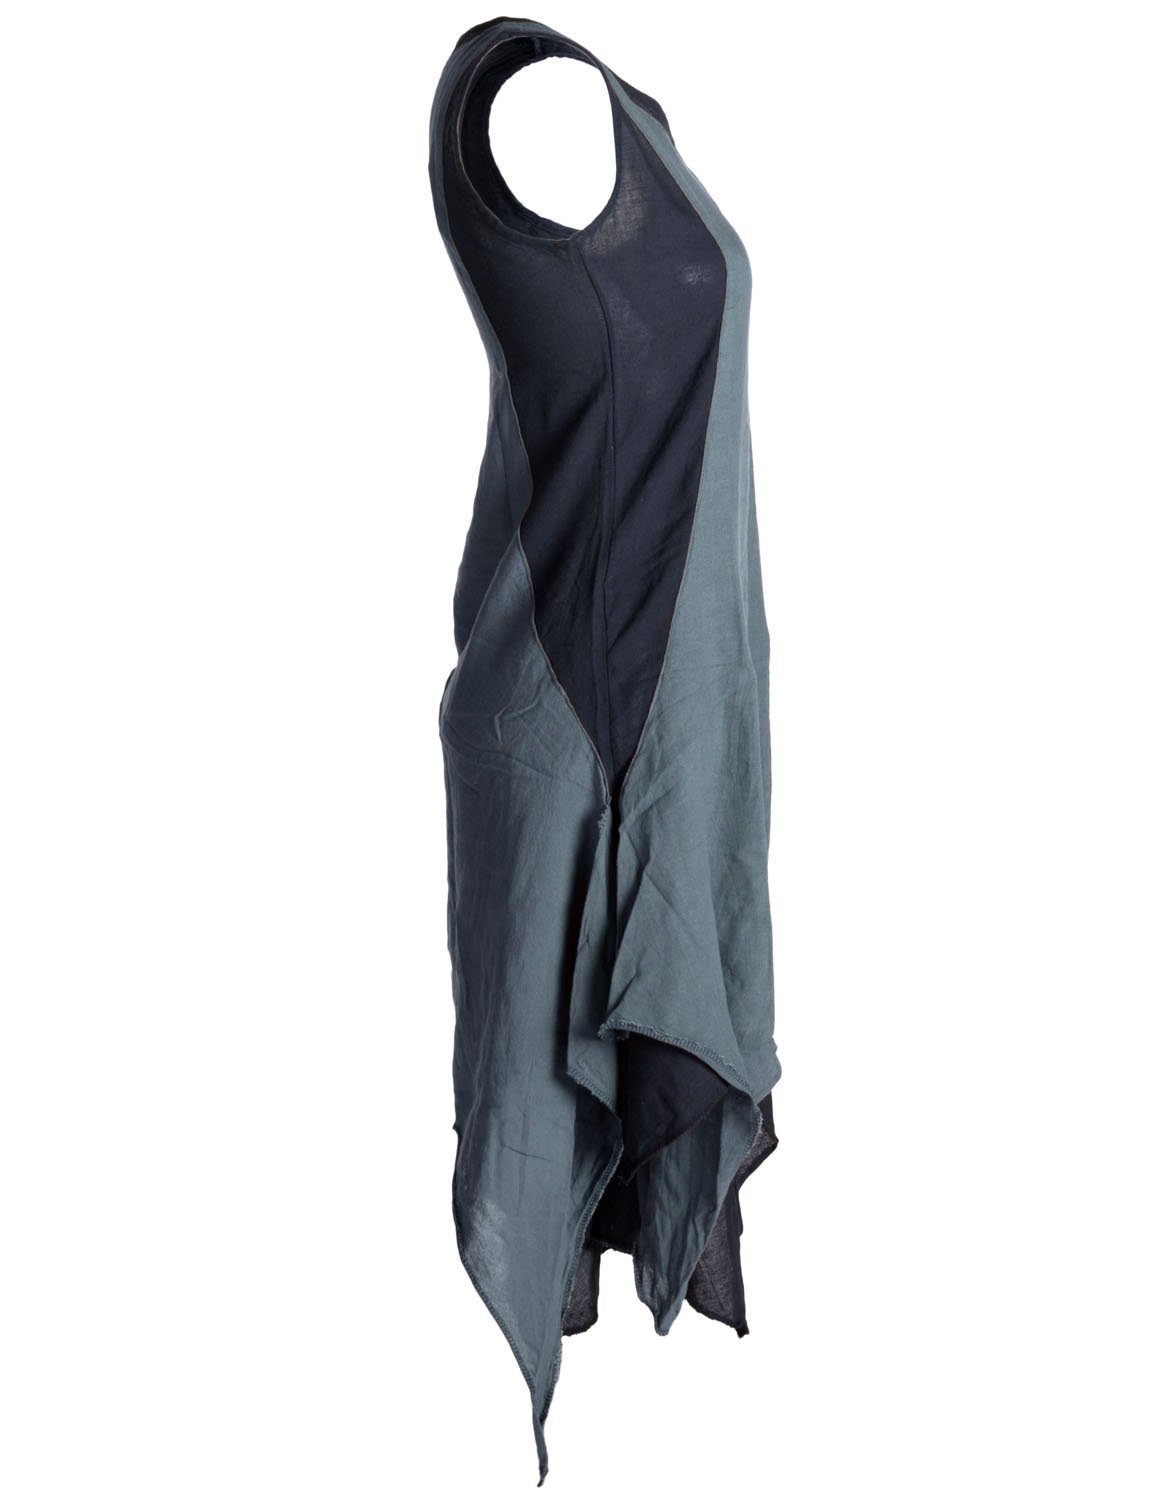 Sommerkleid Vishes Hippie handgewebte Style Goa, Kleid Boho, Ärmelloses schwarz-grau Baumwolle Lagenlook